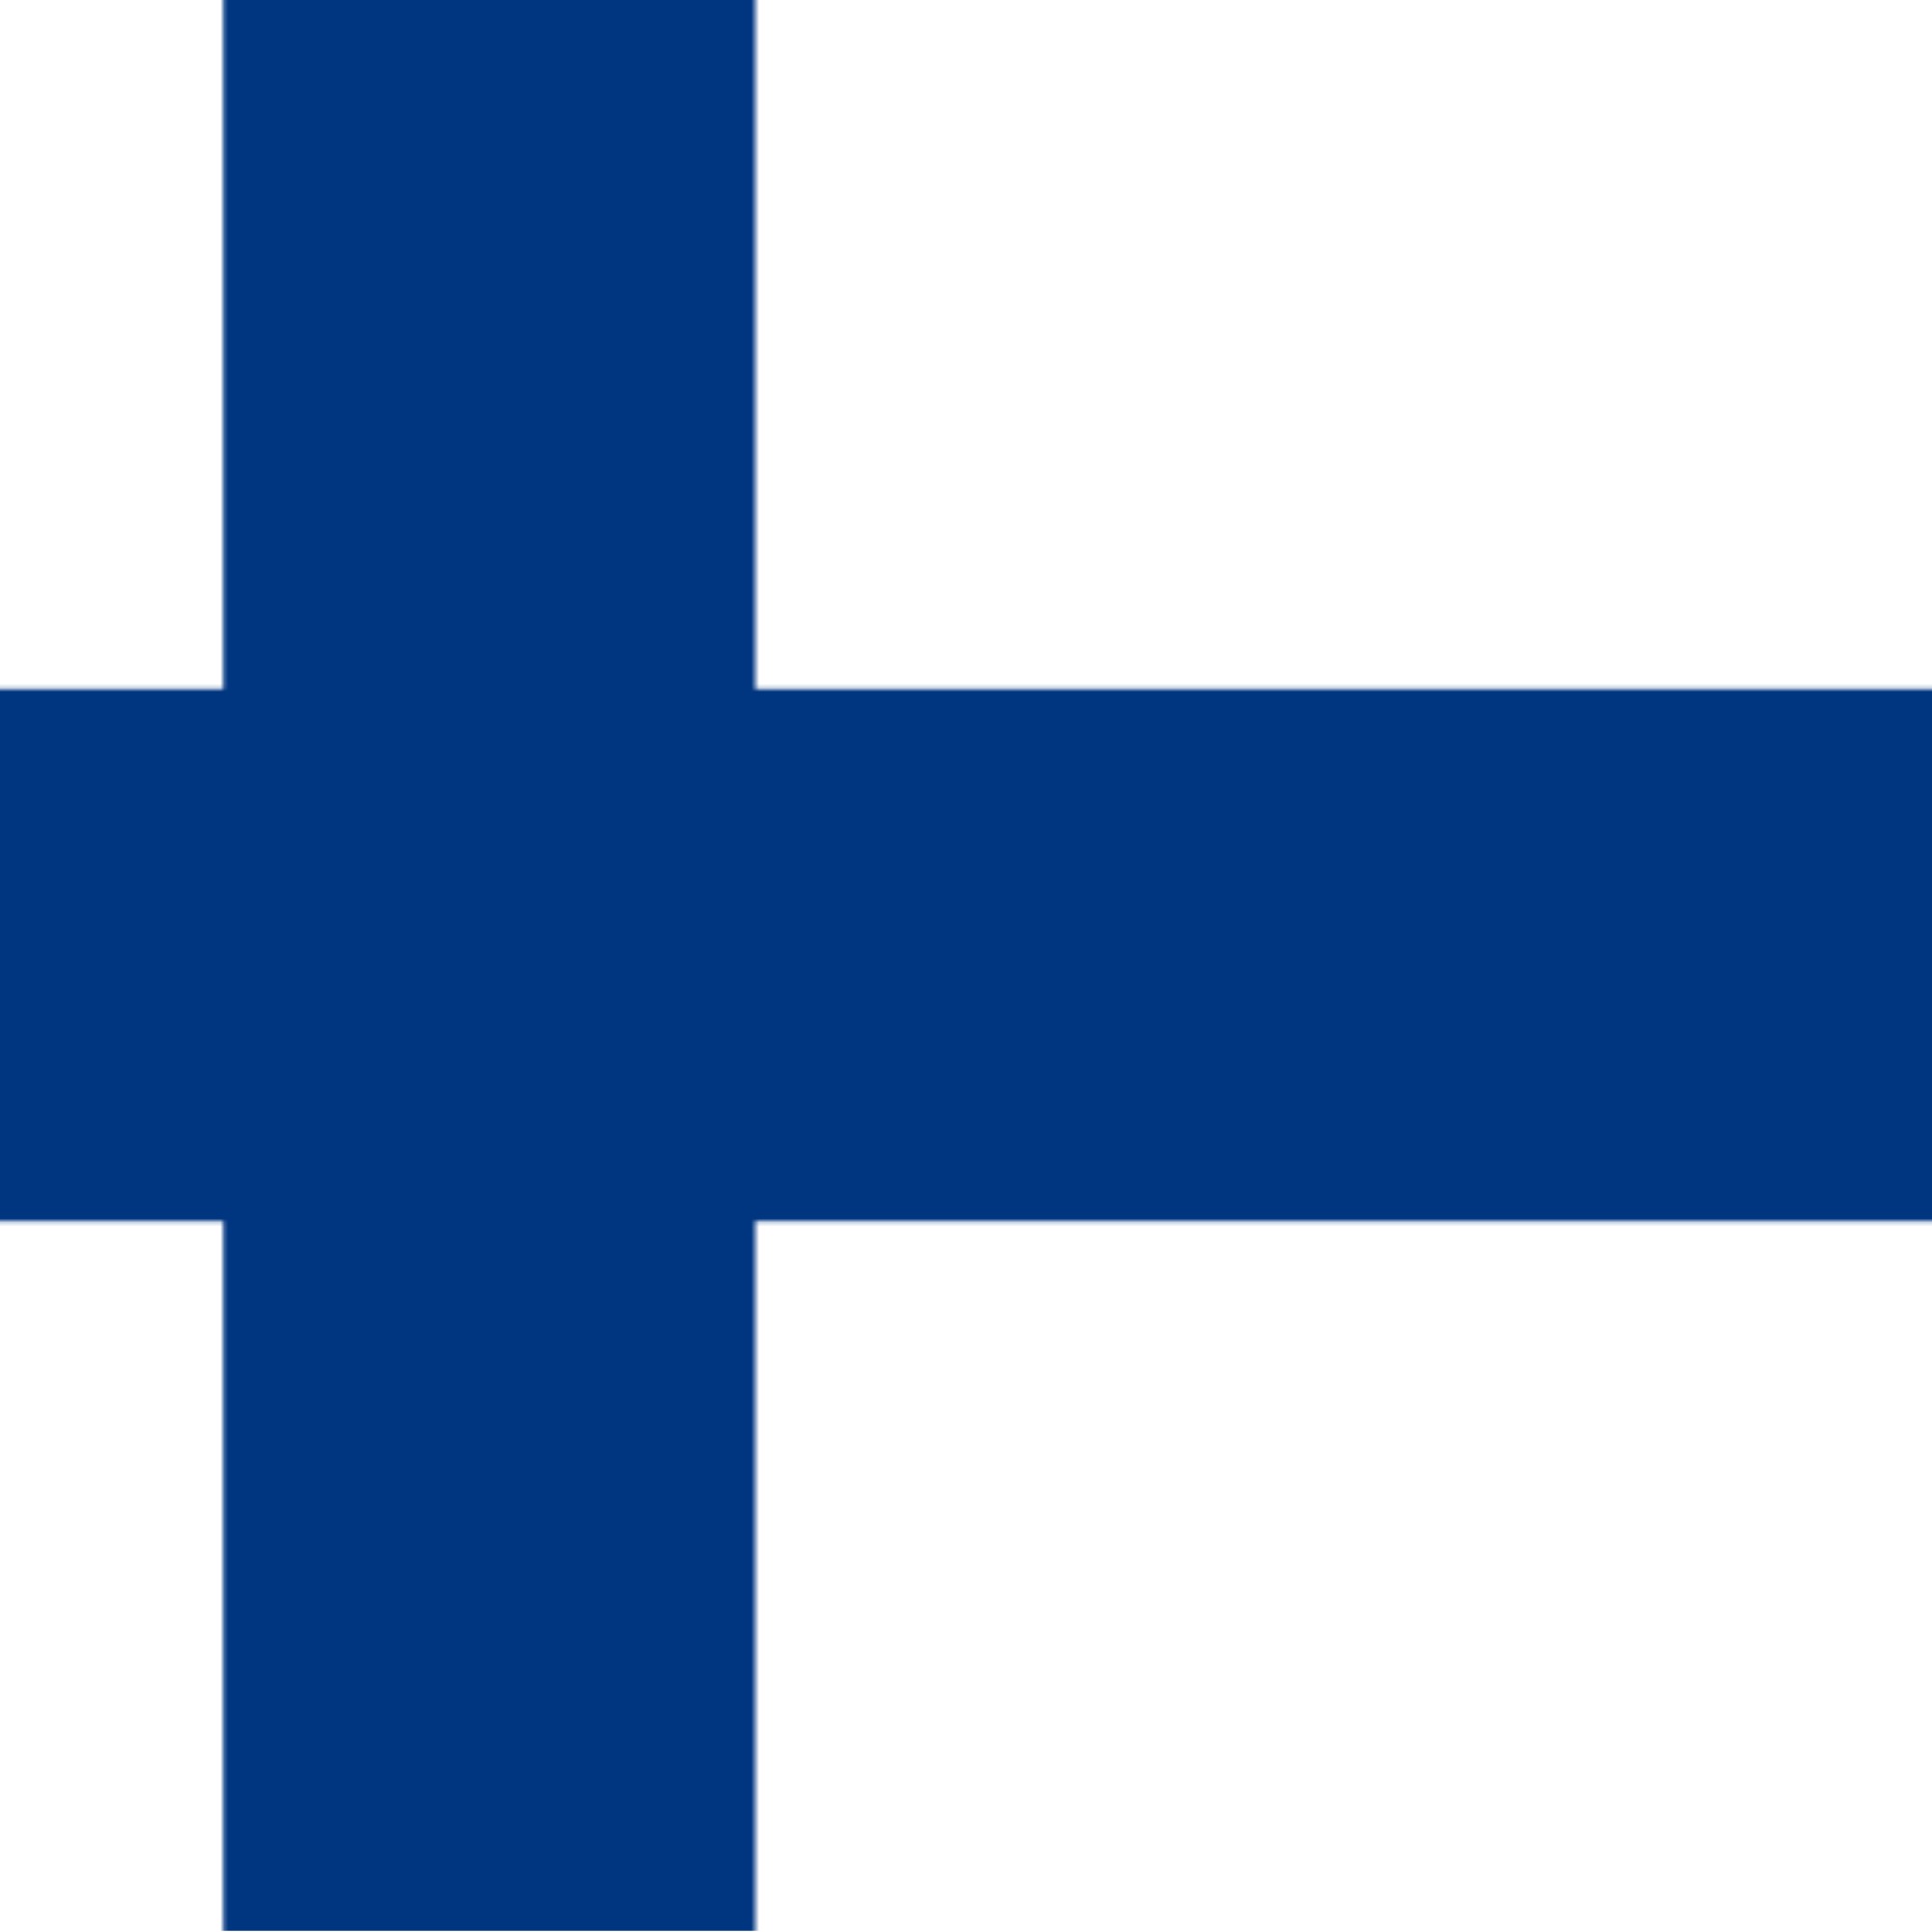 Honorary Consulate of Finland (Alicante) 